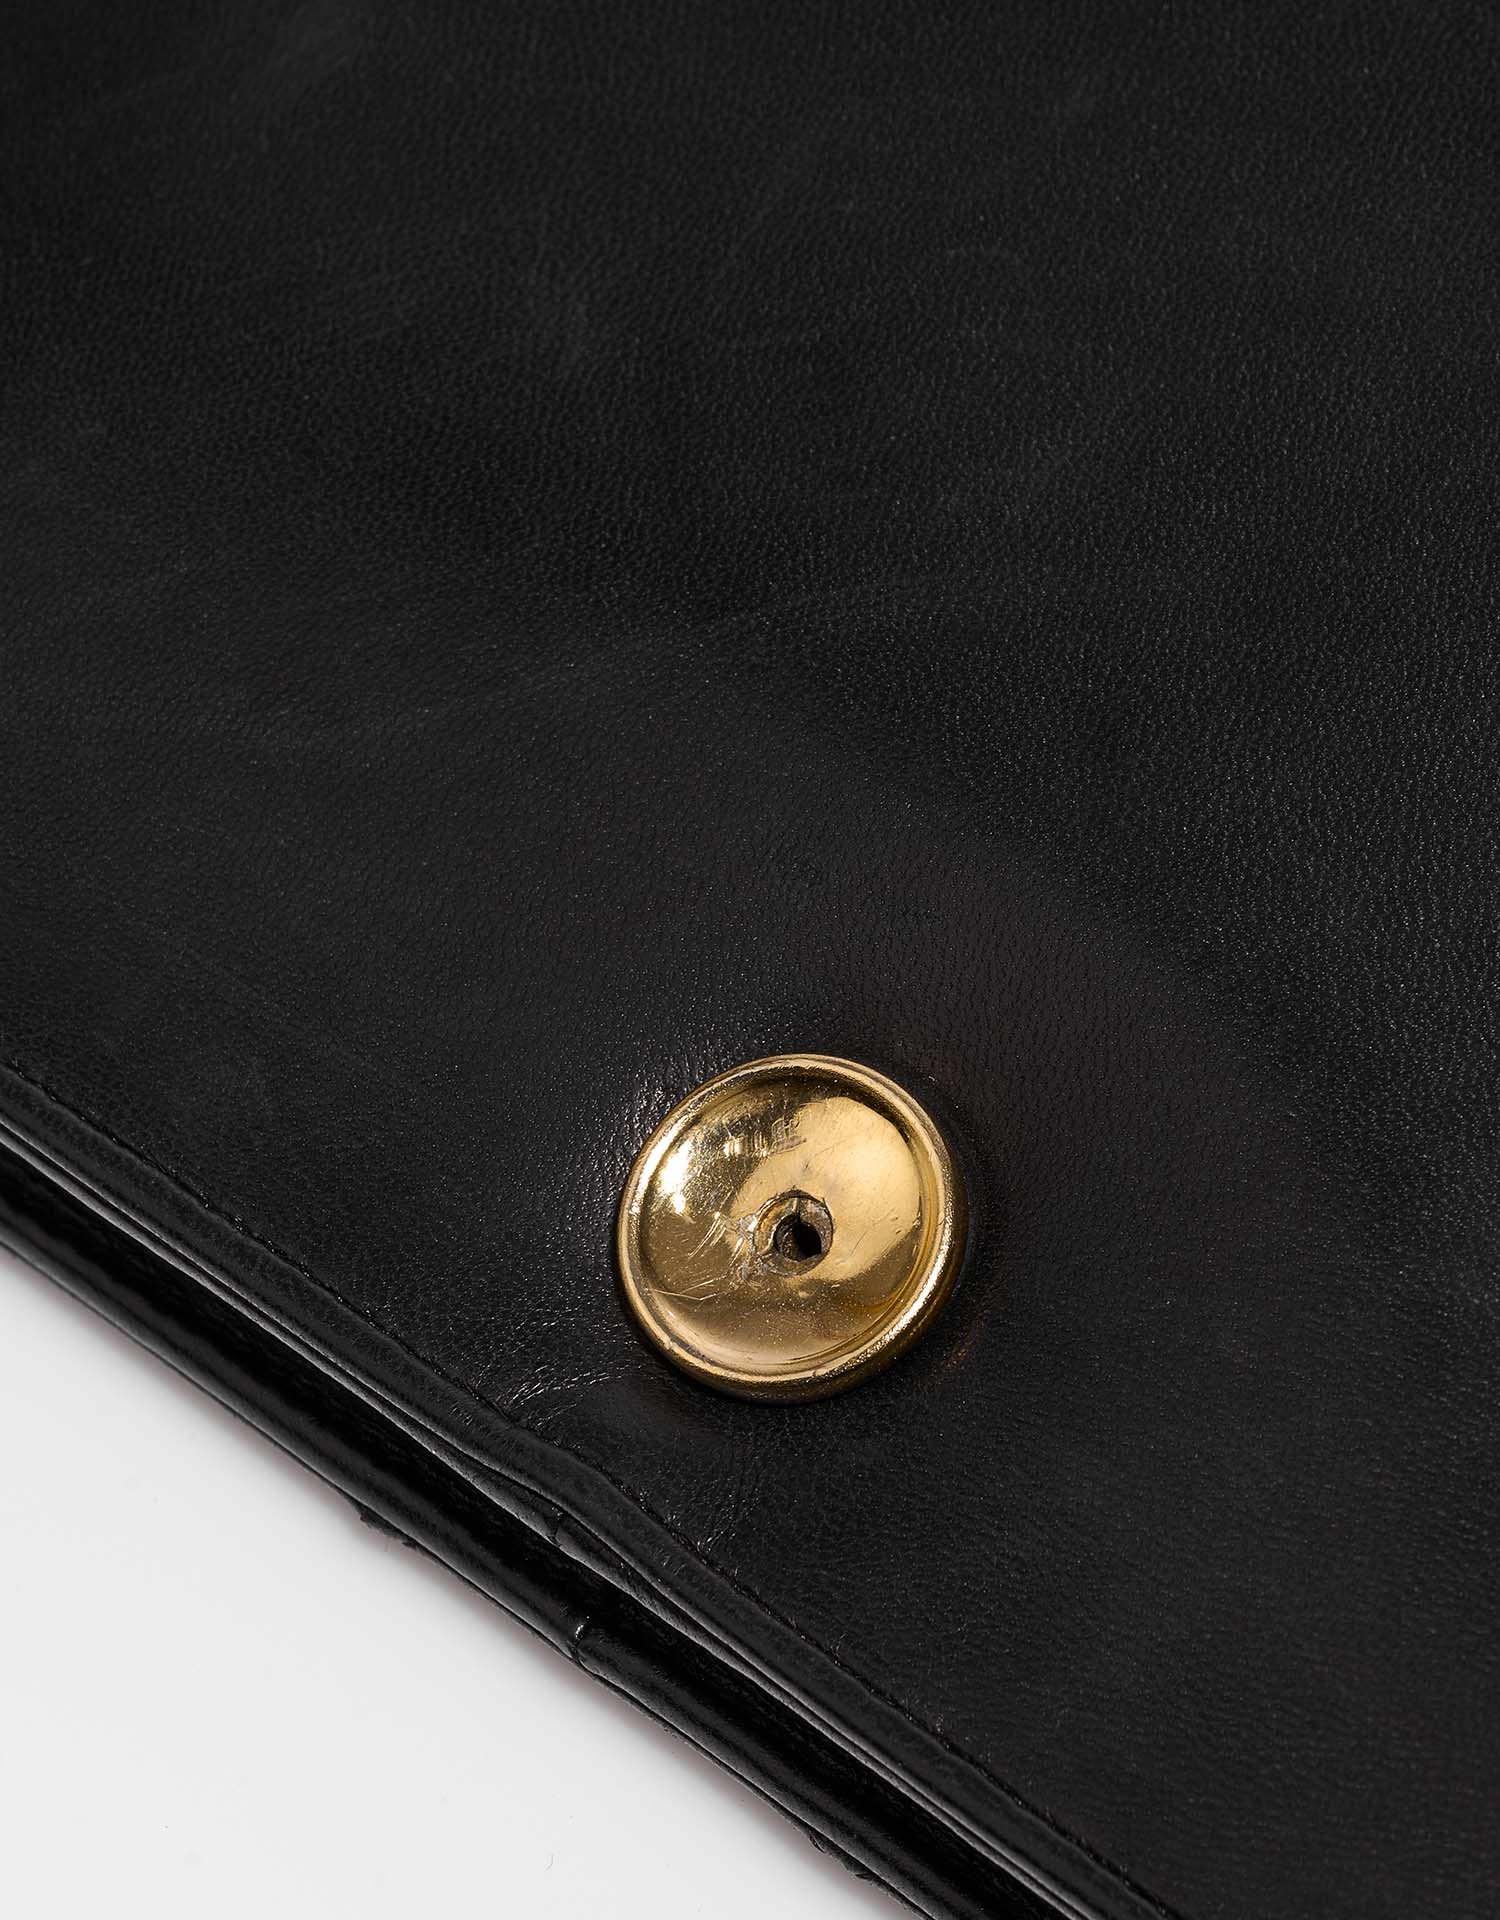 Chanel Timeless Medium Schwarz Gebrauchsspuren 3 | Verkaufen Sie Ihre Designer-Tasche auf Saclab.com